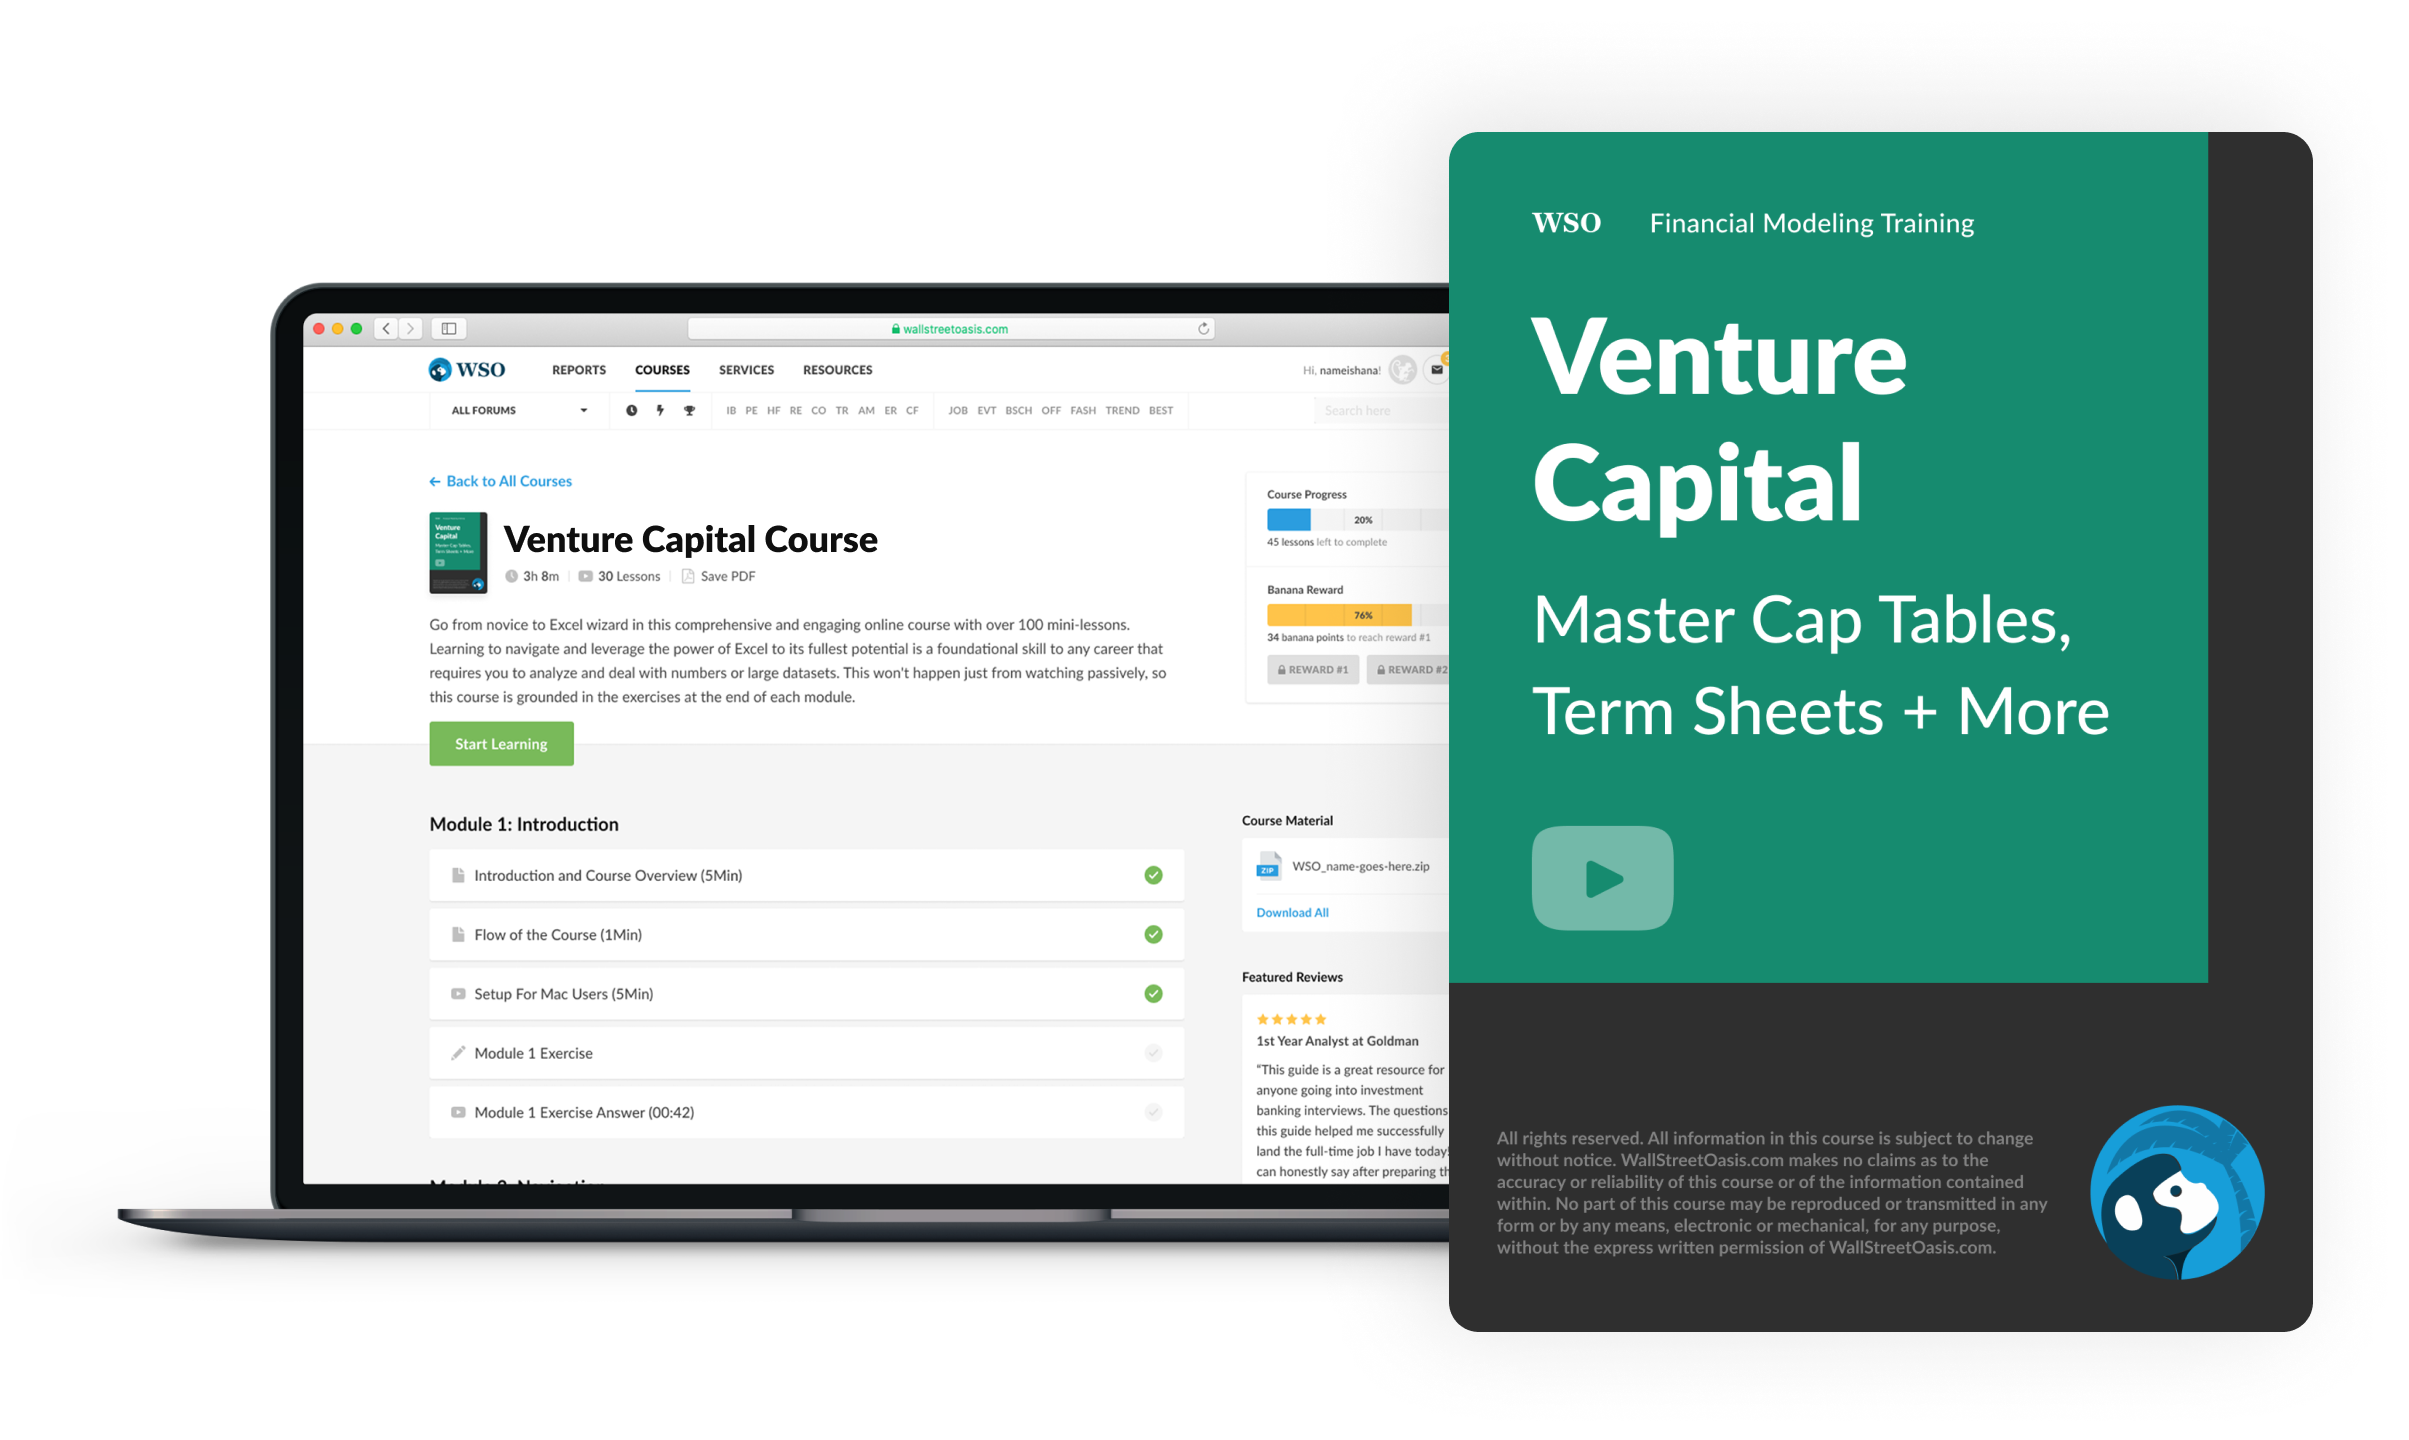 Venture Capital Course